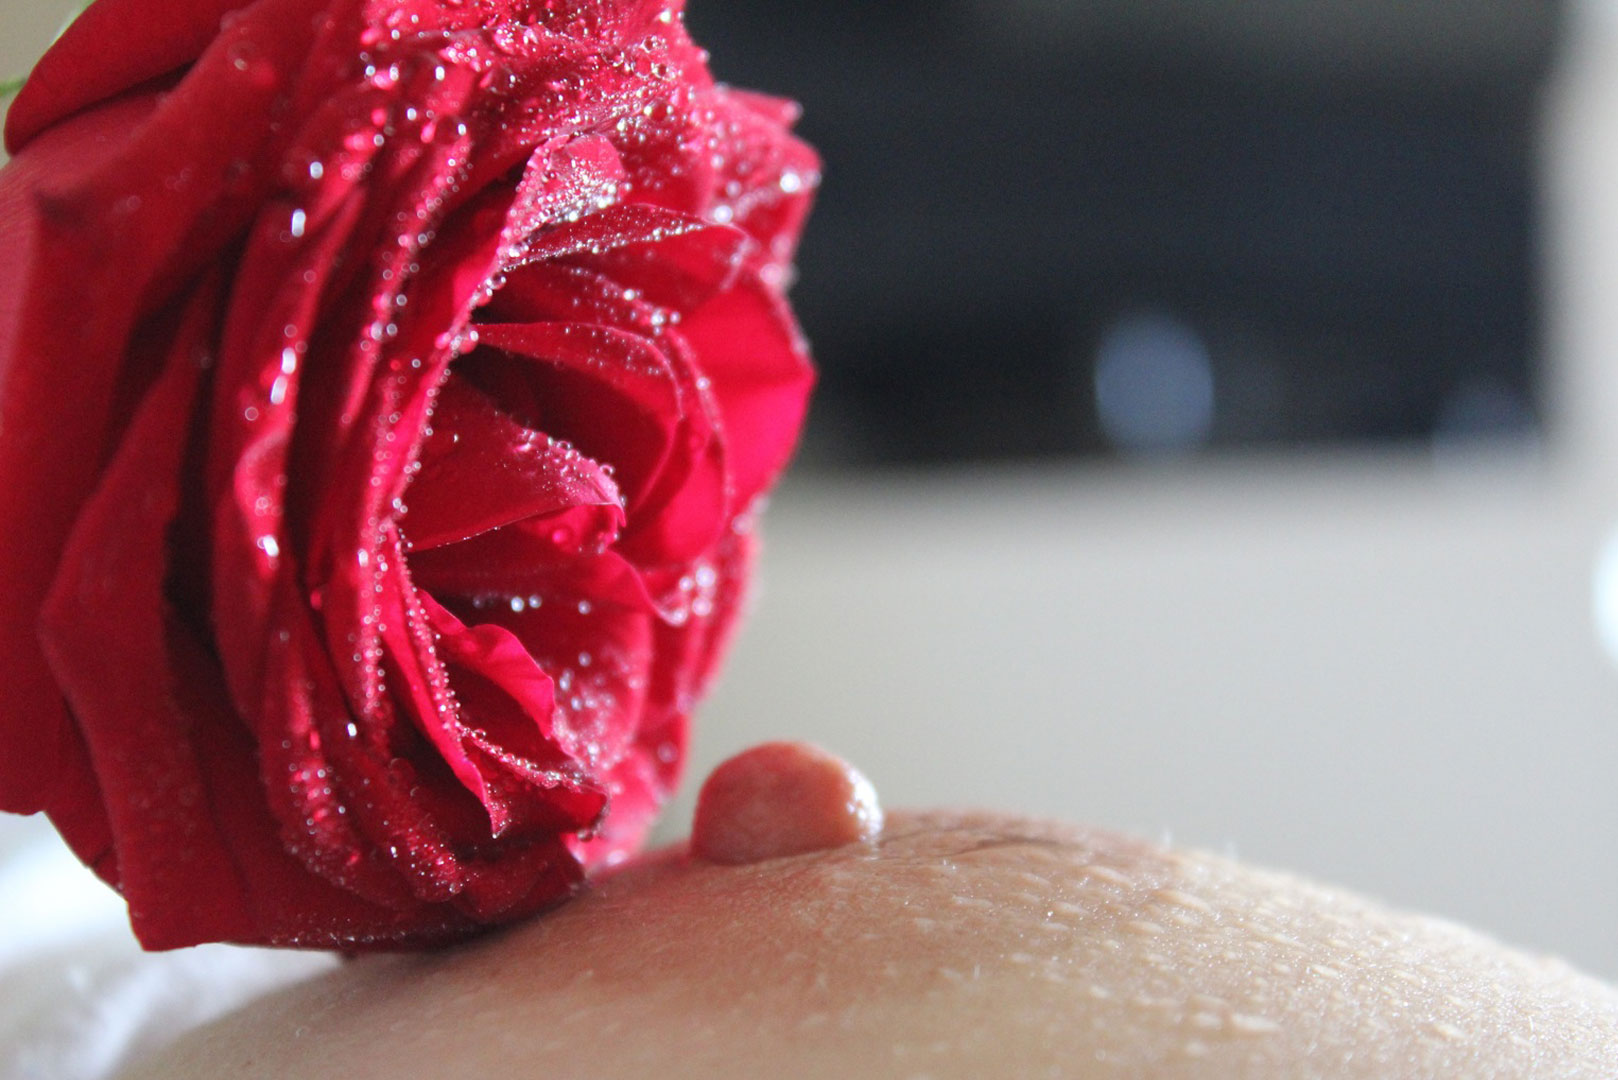 Un téton d'une femme caressé par une rose